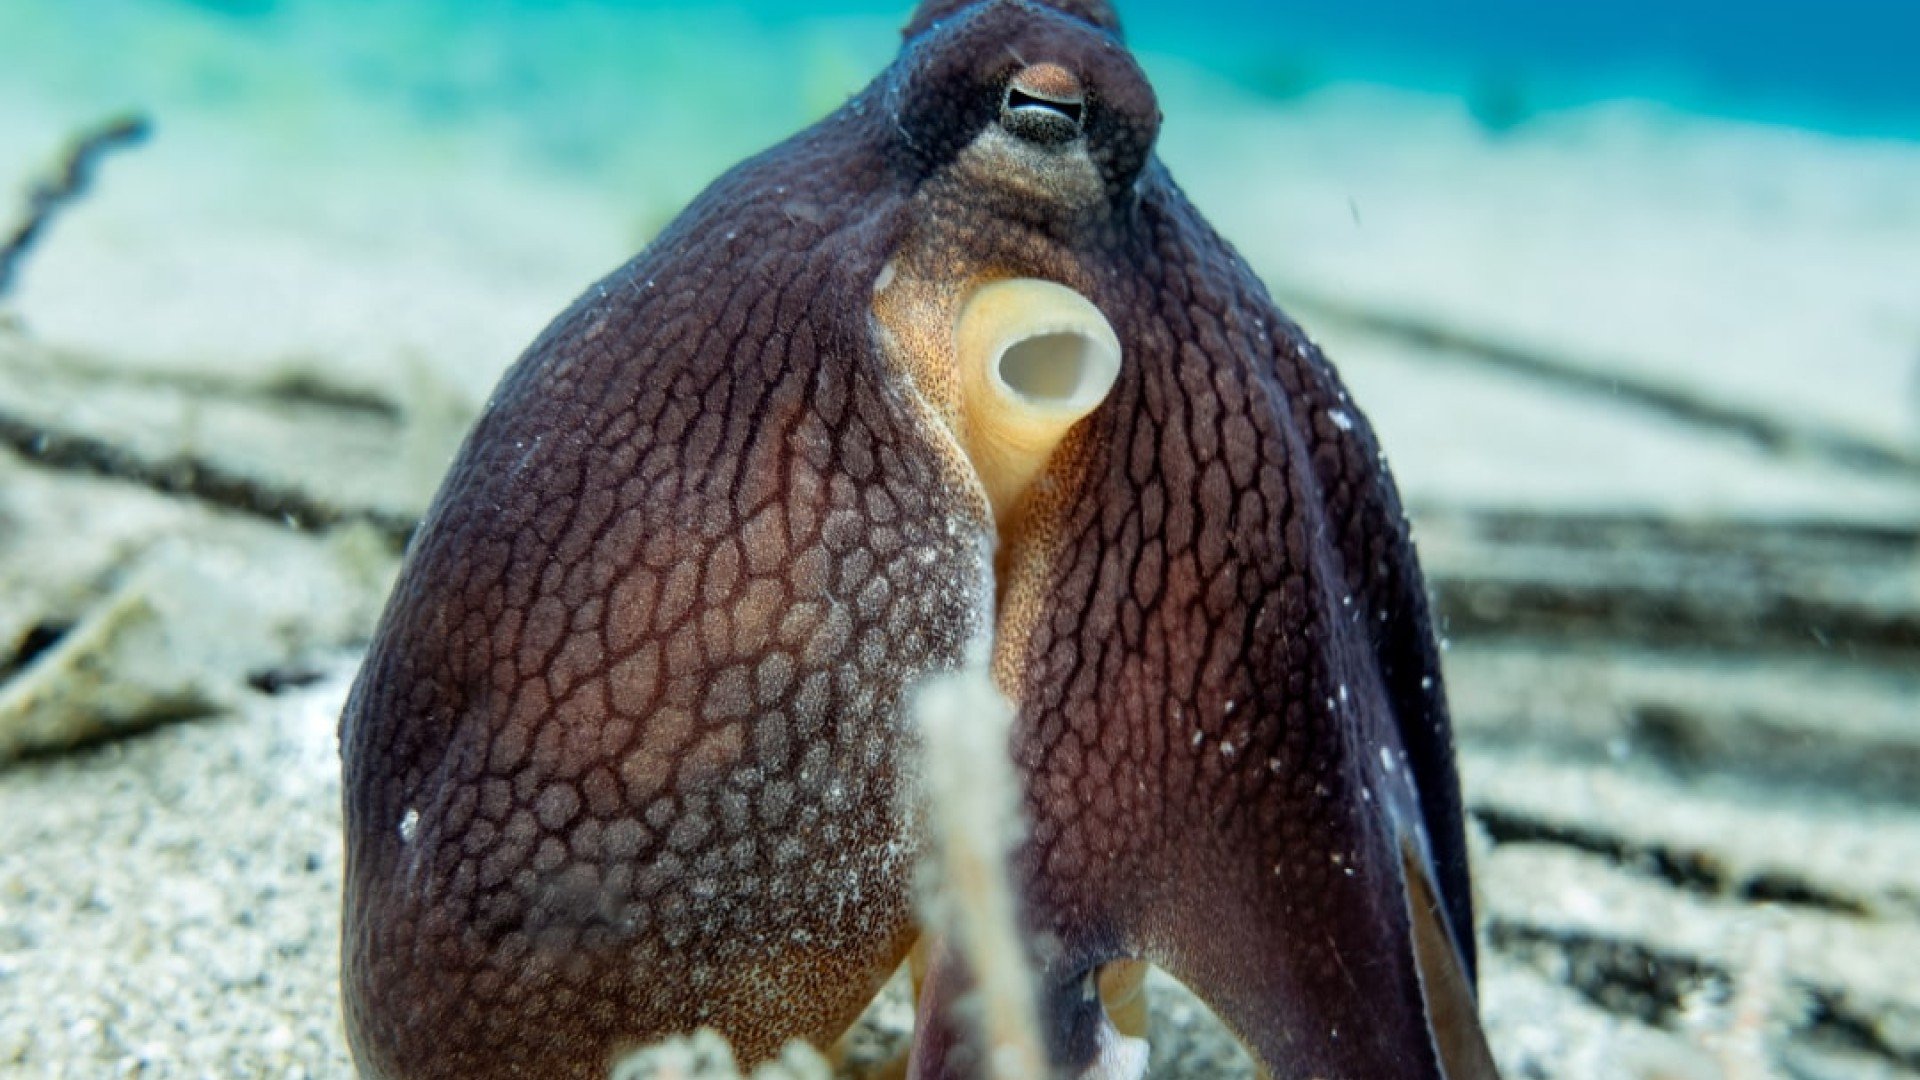 octopus in sand manta dive gili trawangan